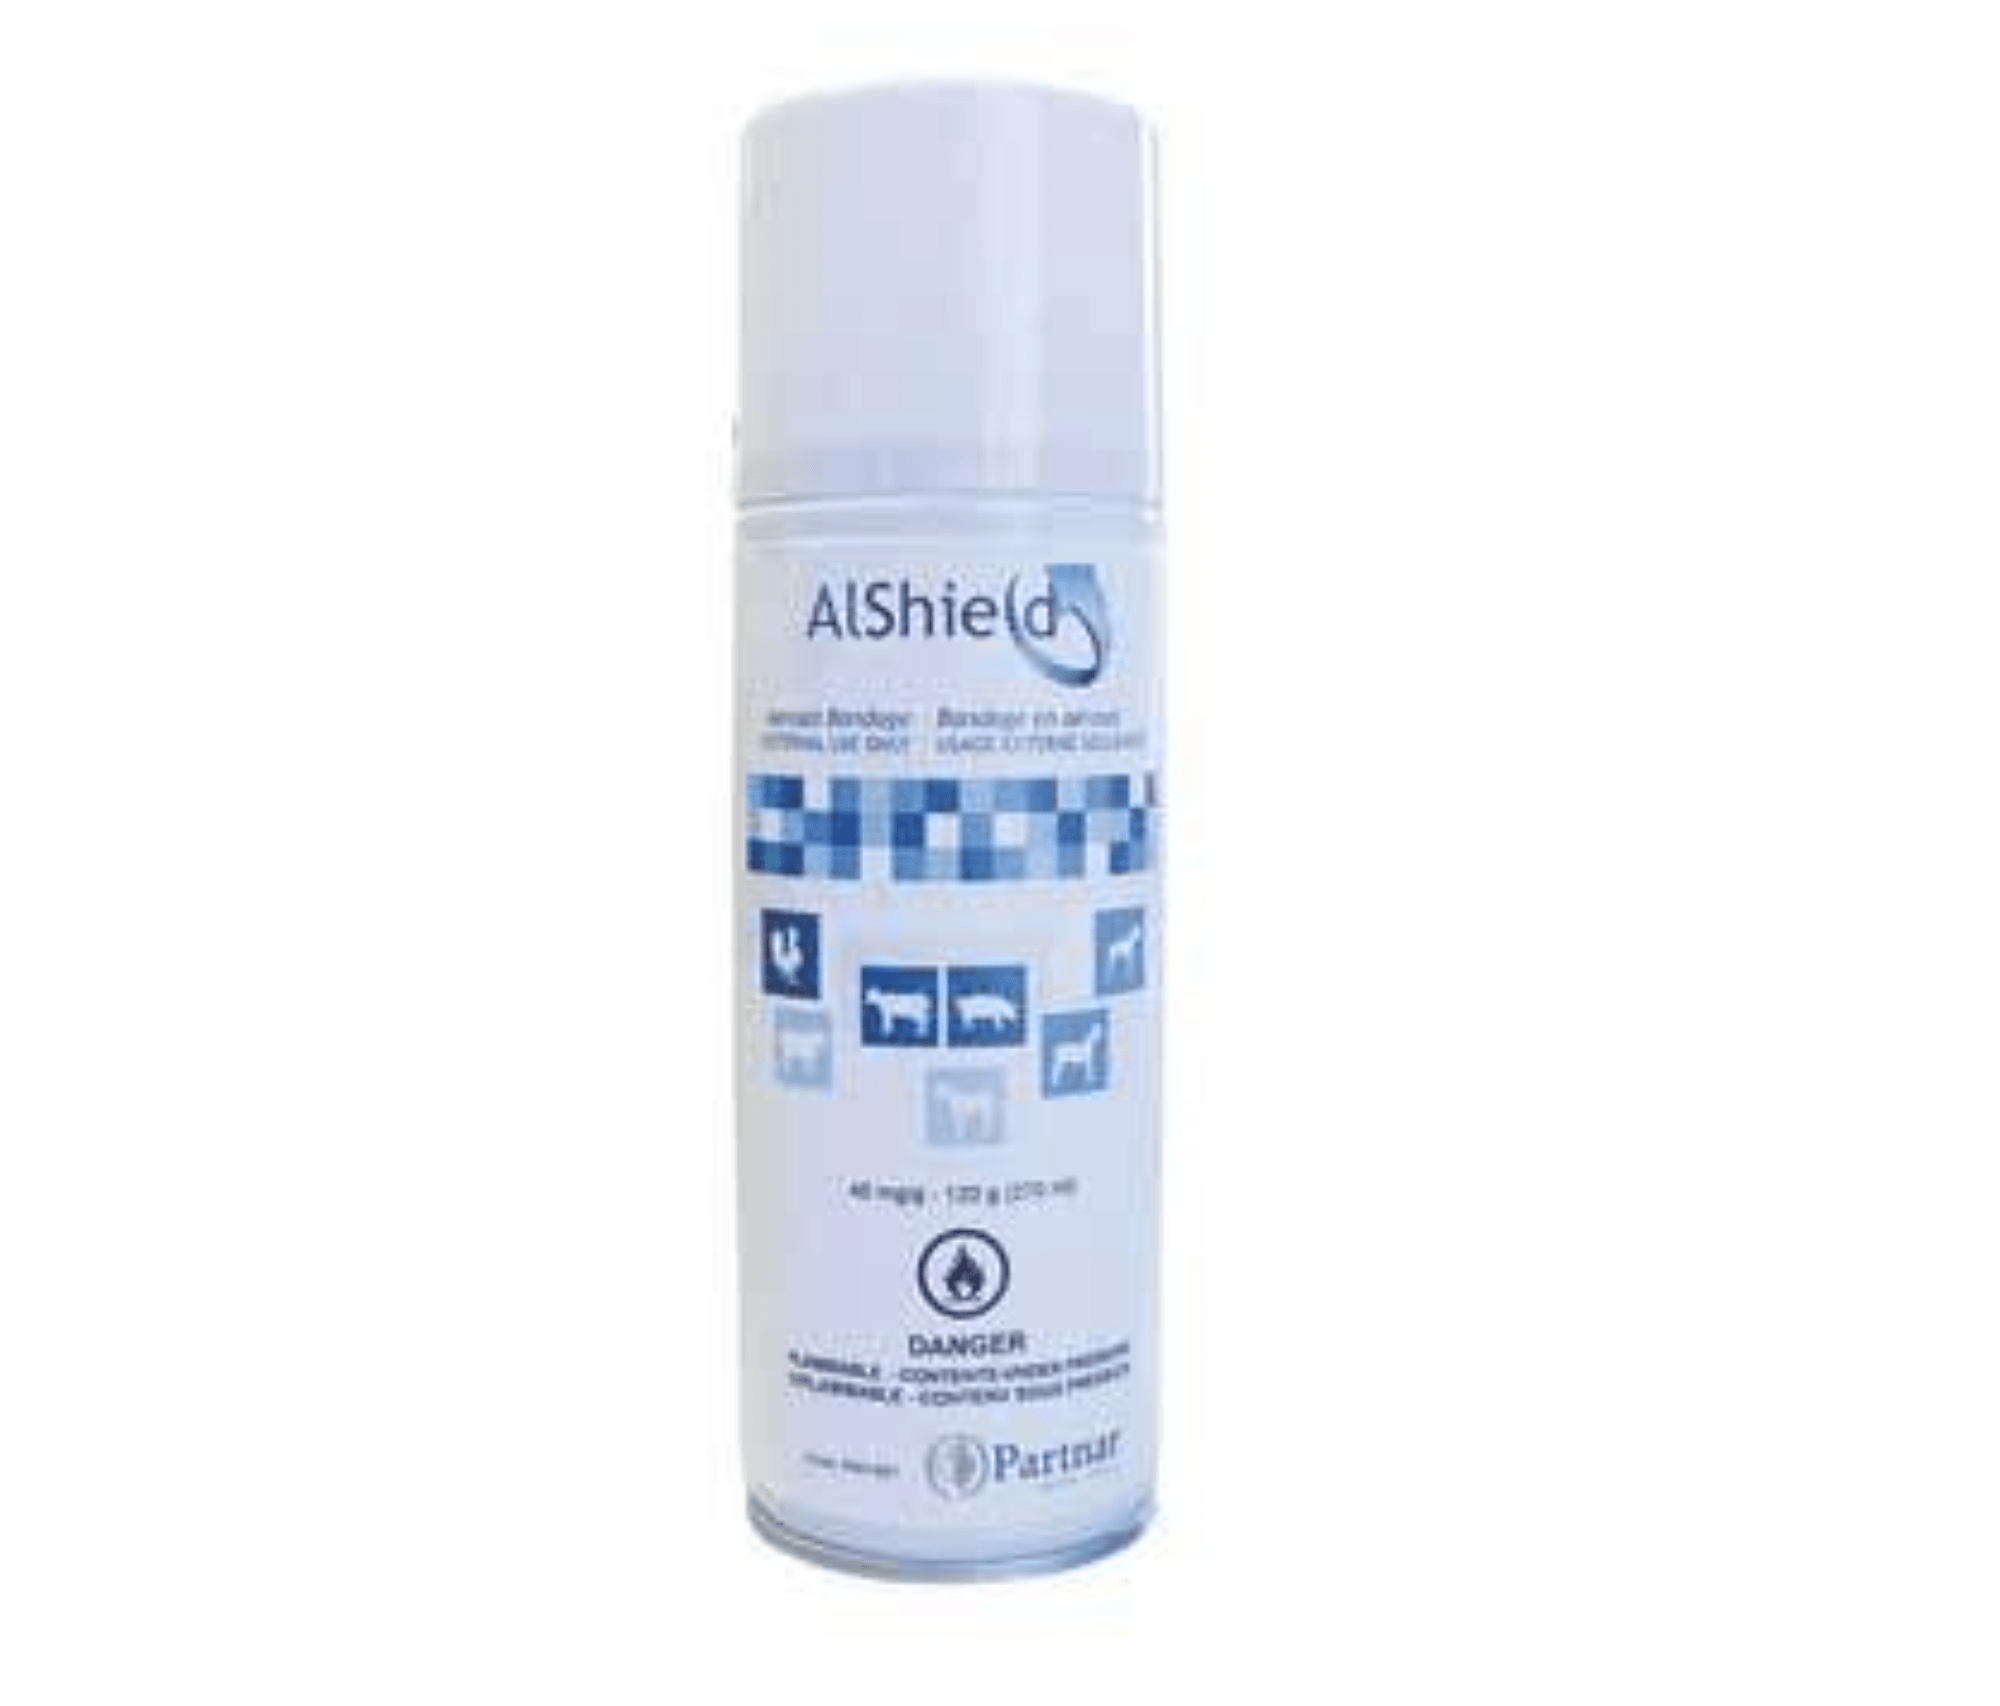 AlShield Bandage Spray 120gm